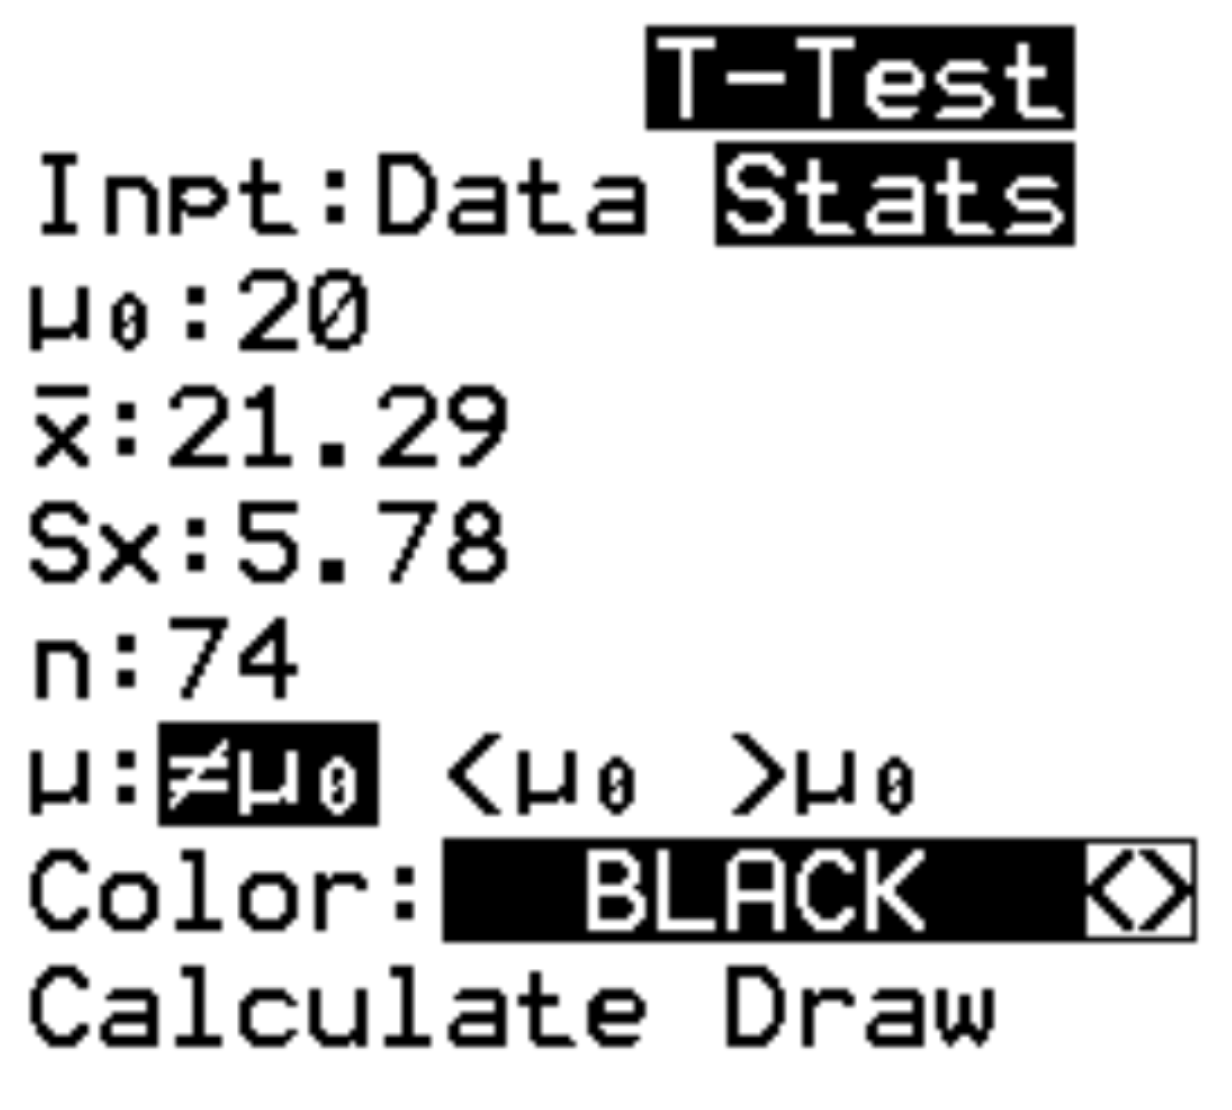 Un esempio di test t con statistiche nella TI-84